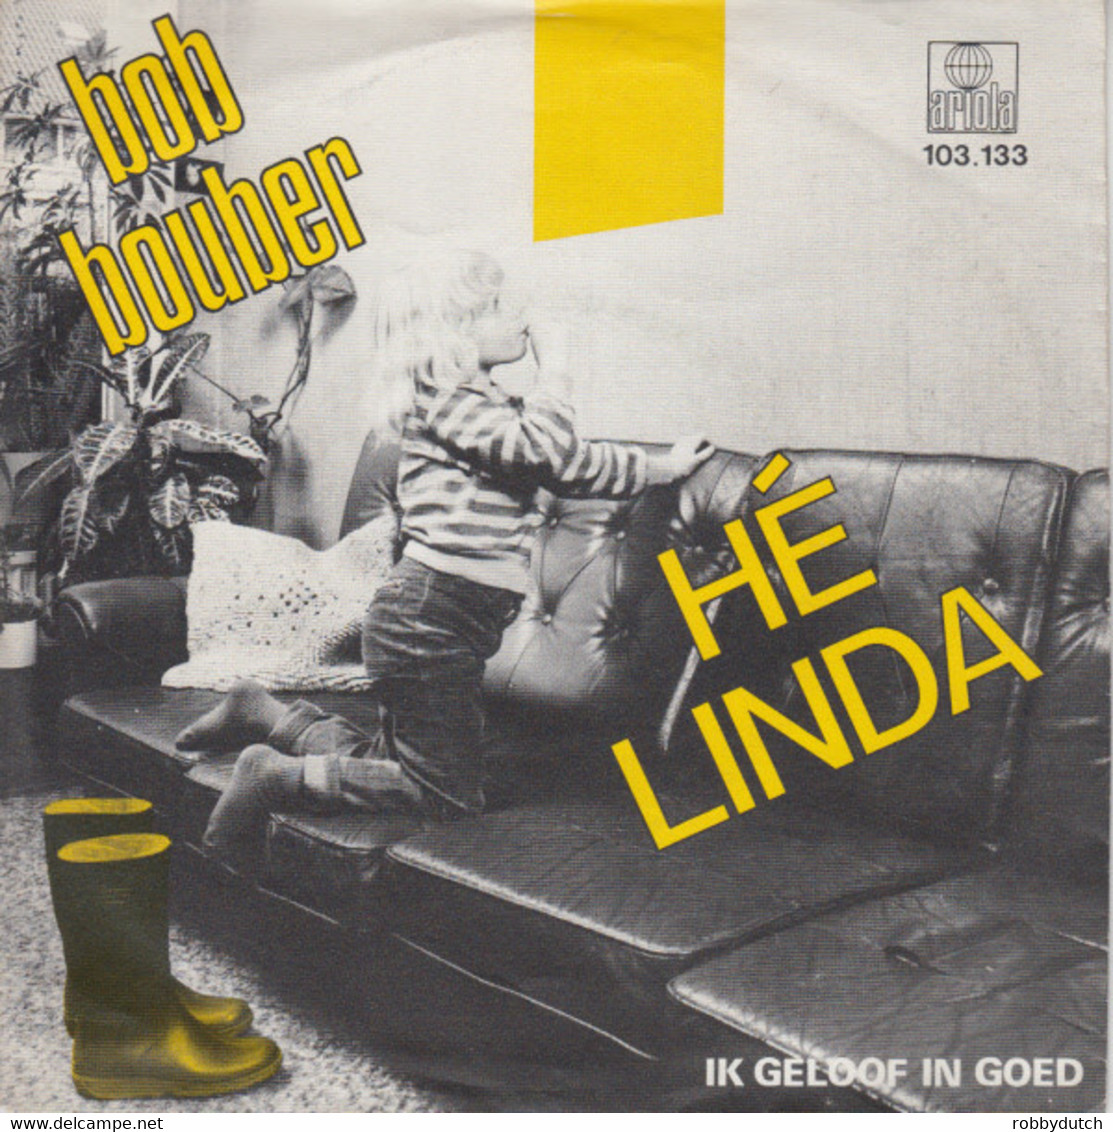 * 7" * BOB BOUBER - HÉ LINDA (Holland 1981 EX-) - Andere - Nederlandstalig